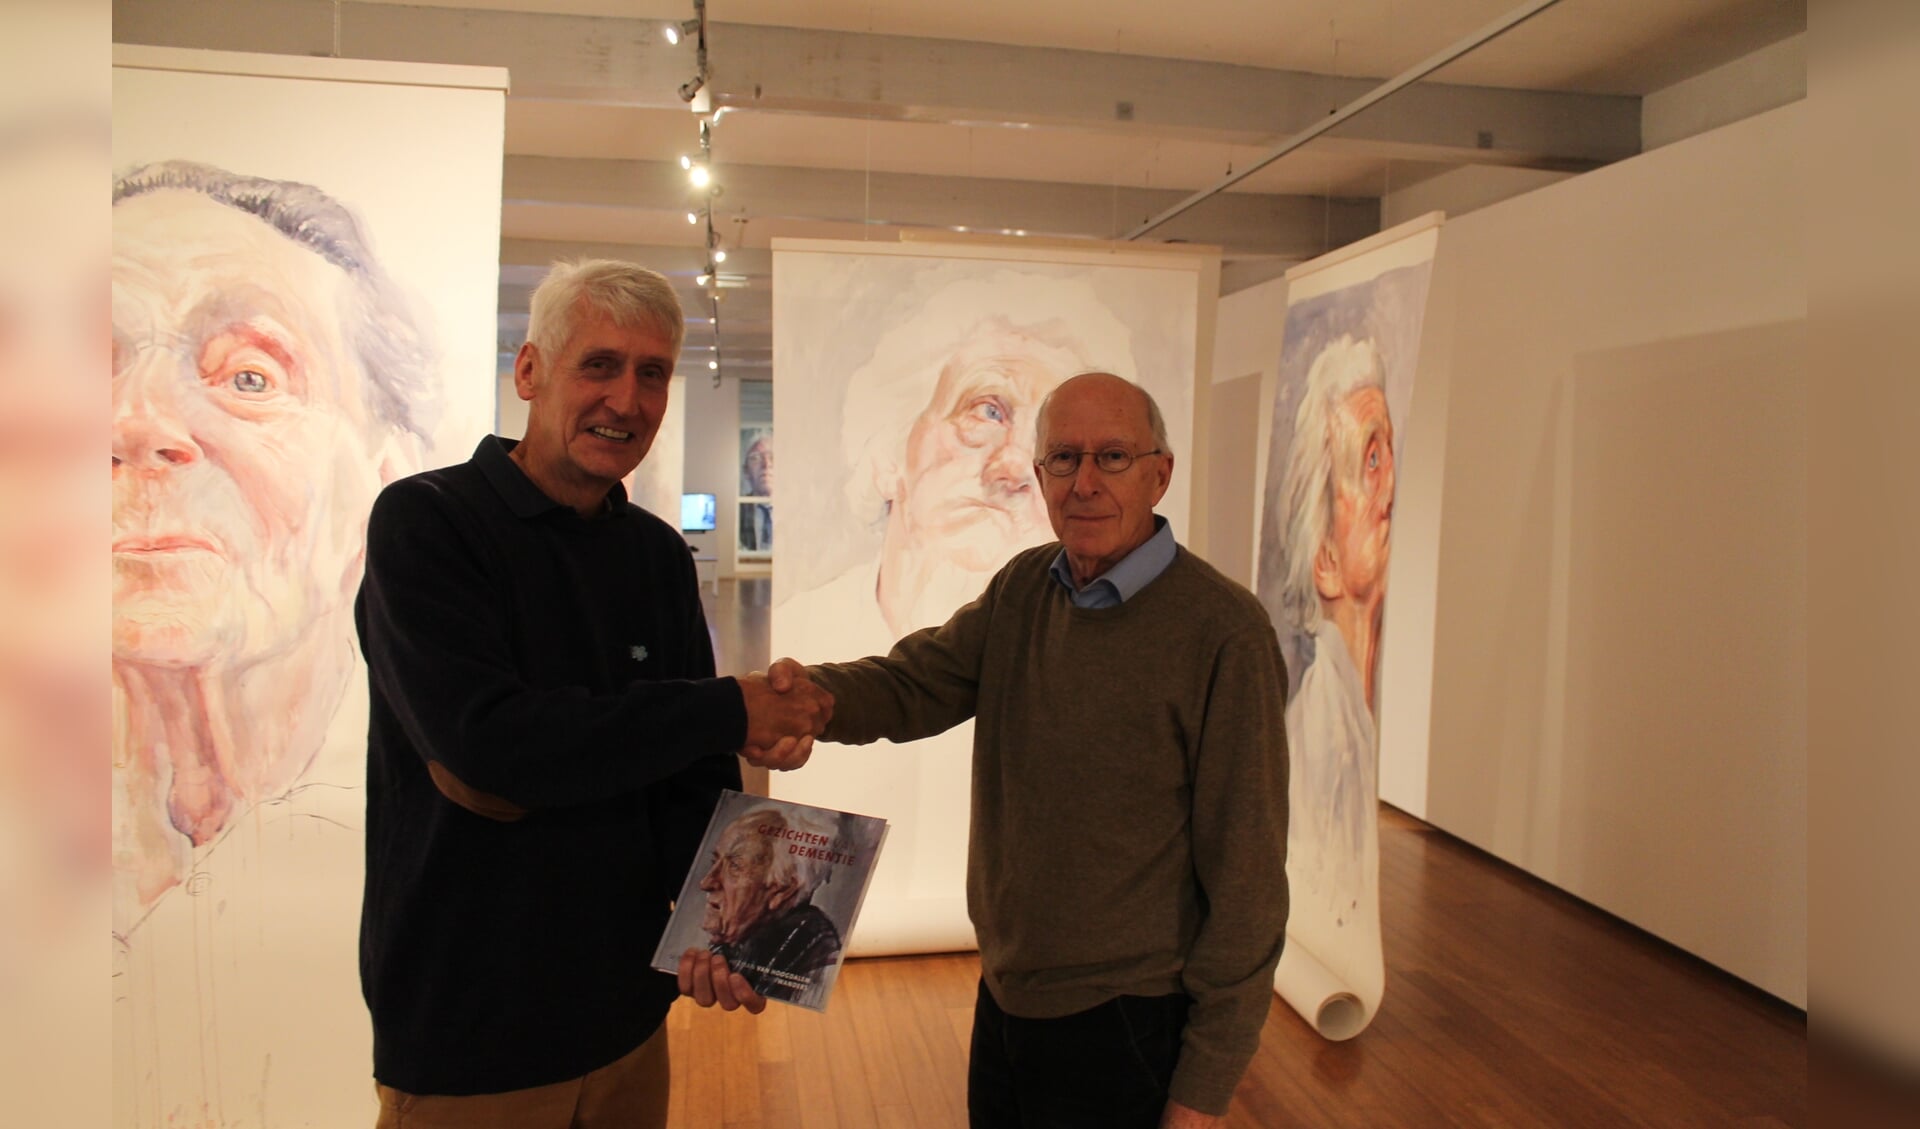 De voorzitter van Alzheimer DWO, Bert van der Lende, overhandigt het expositieboek aan de heer Wesselman